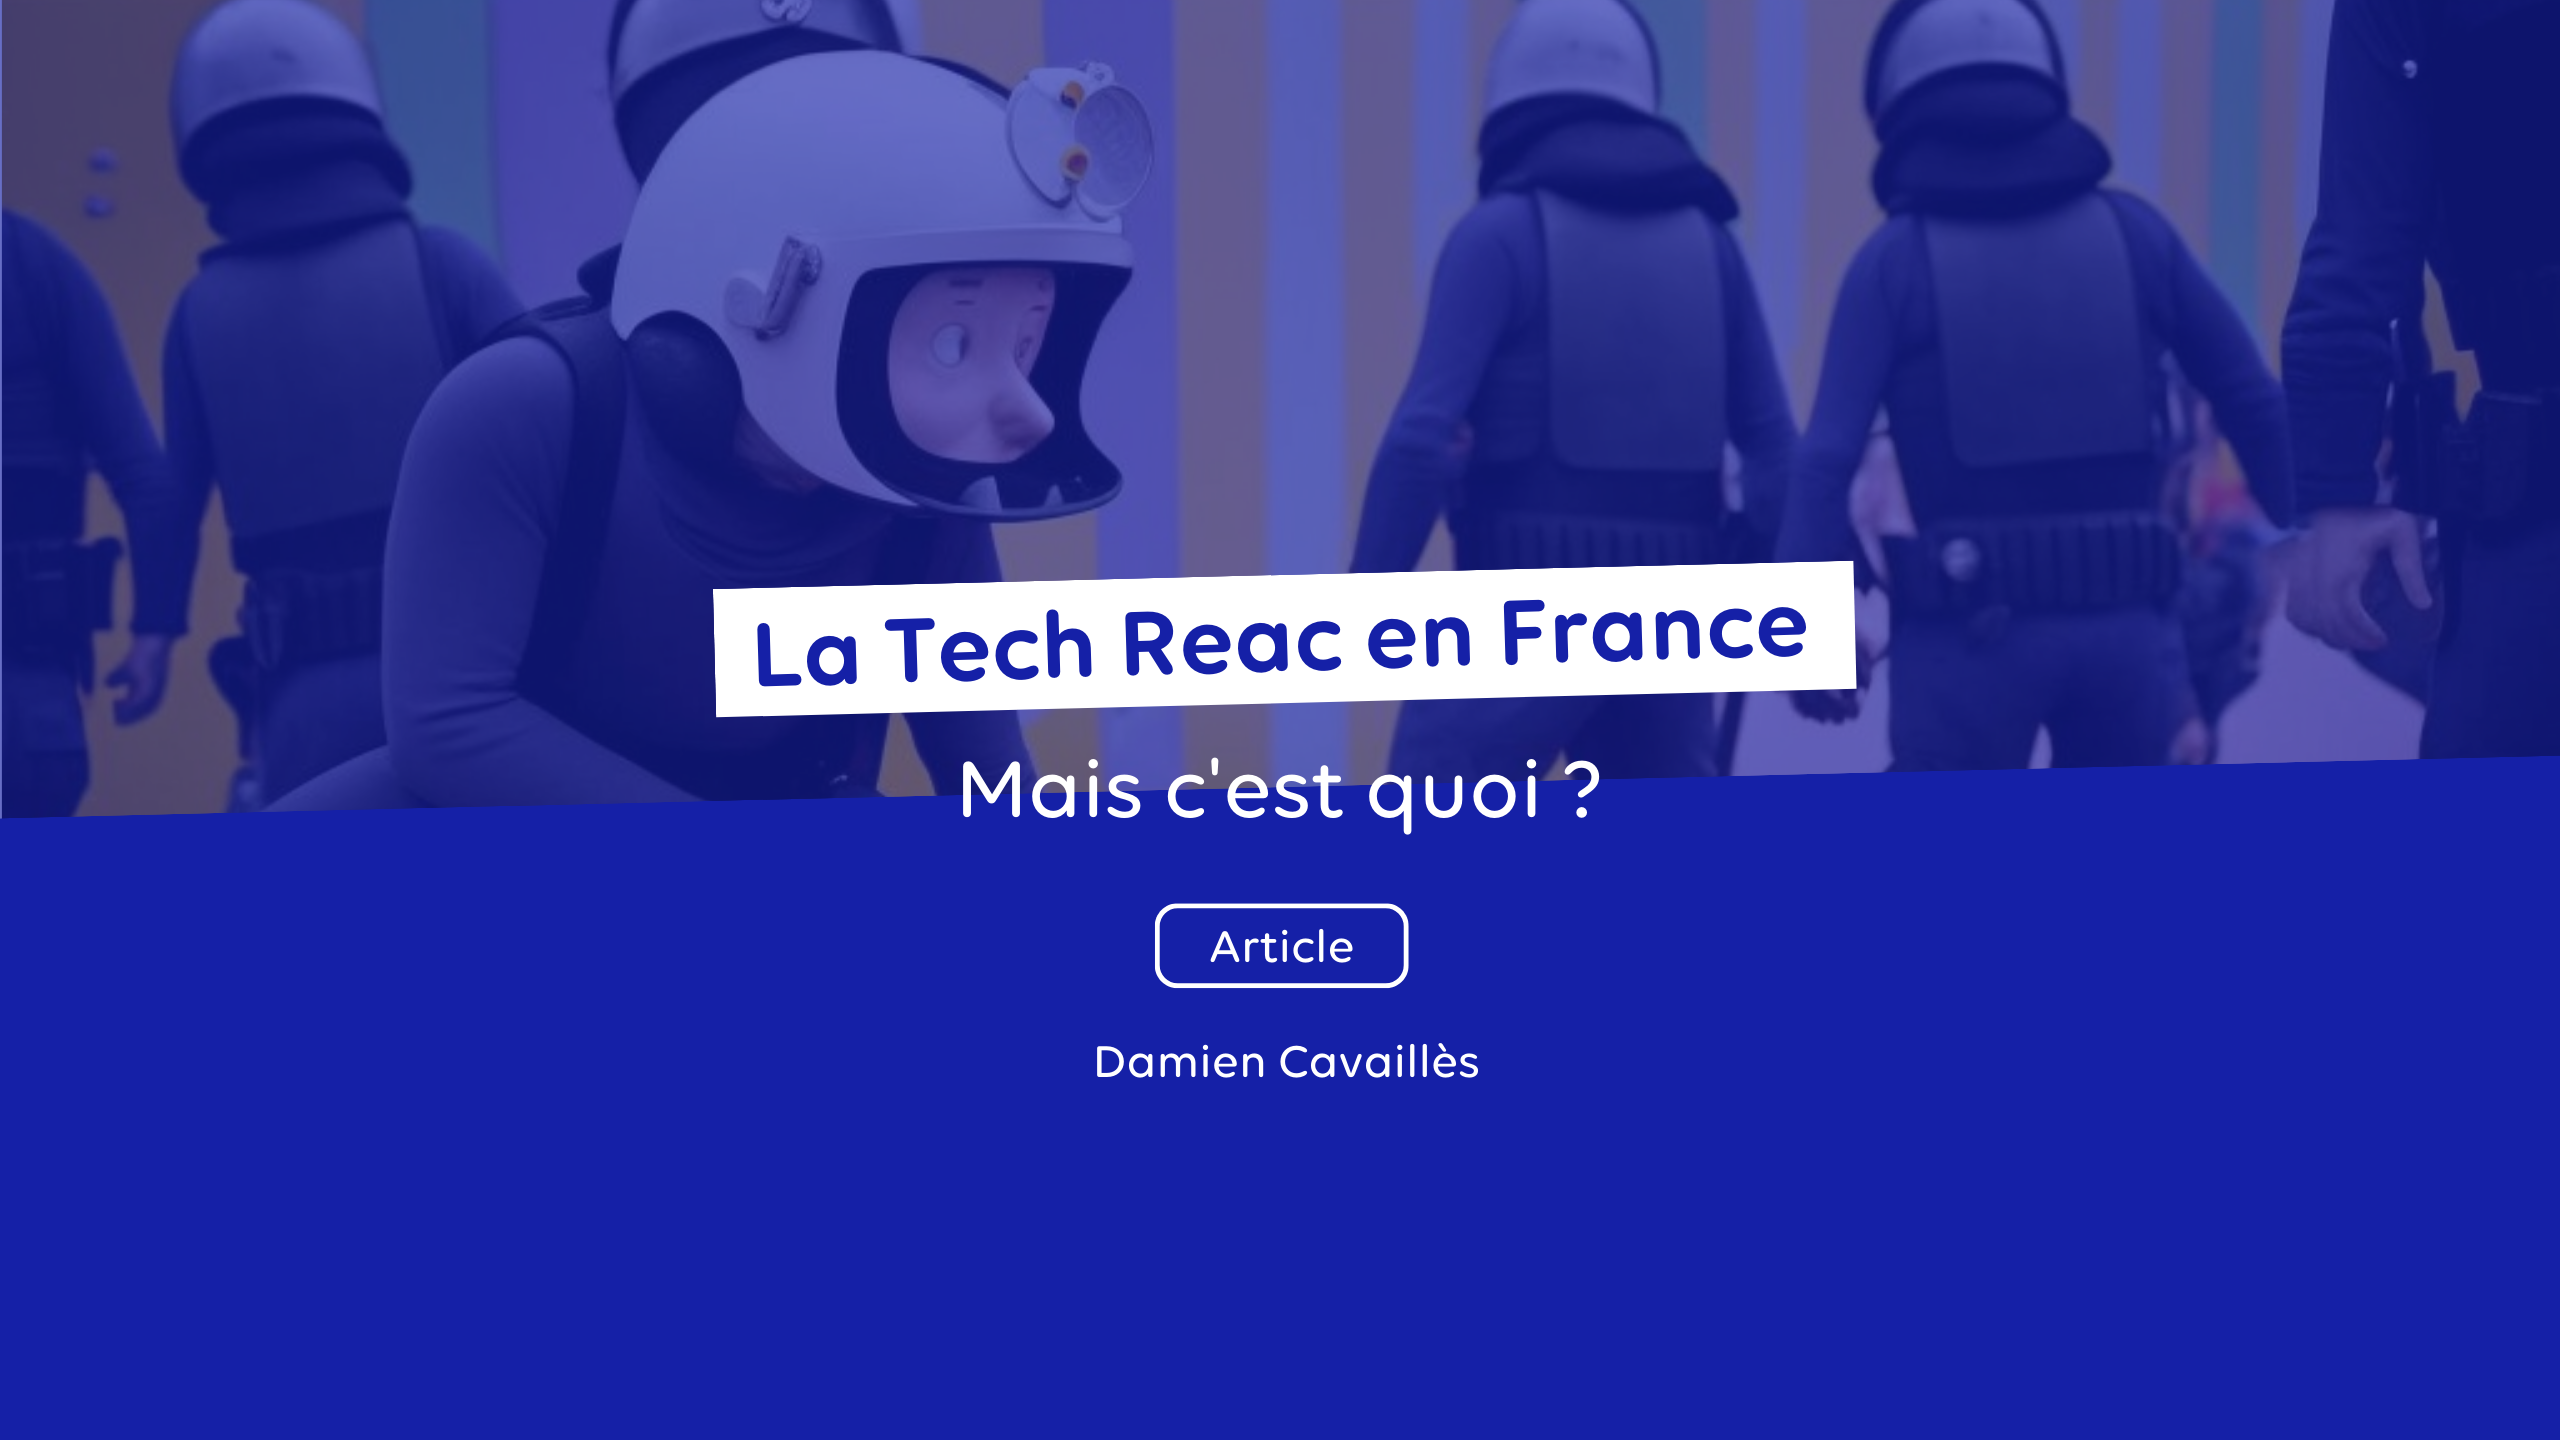 C’est quoi la Tech Reac en France ?